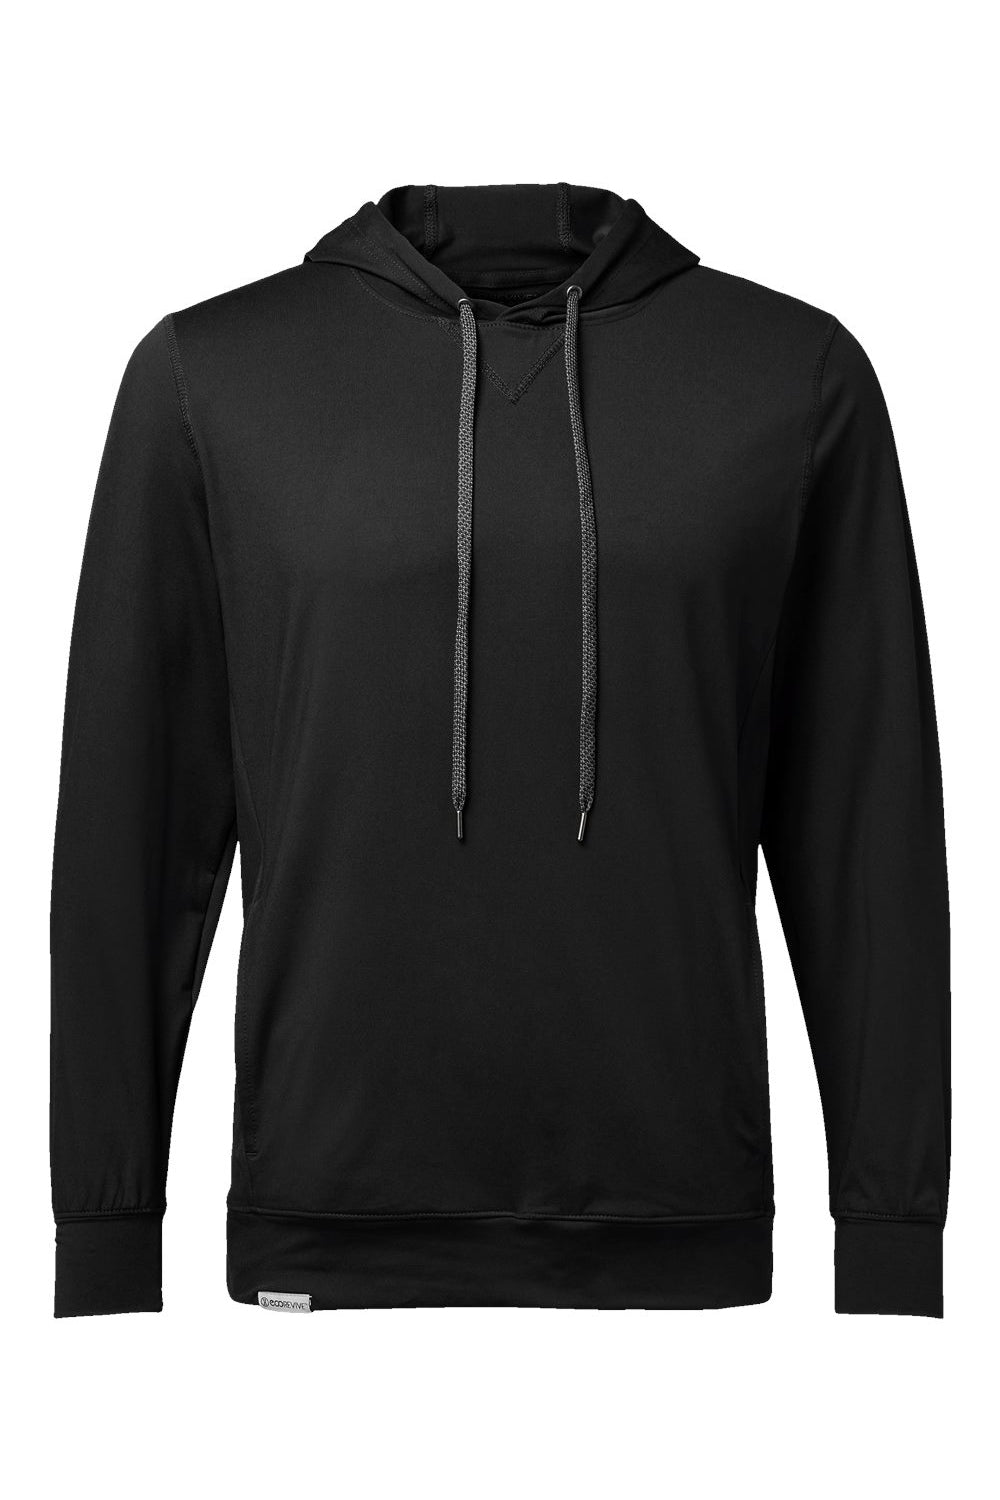 Holloway 222598 Mens Eco Revive Ventura Hooded Sweatshirt Hoodie Black Flat Front